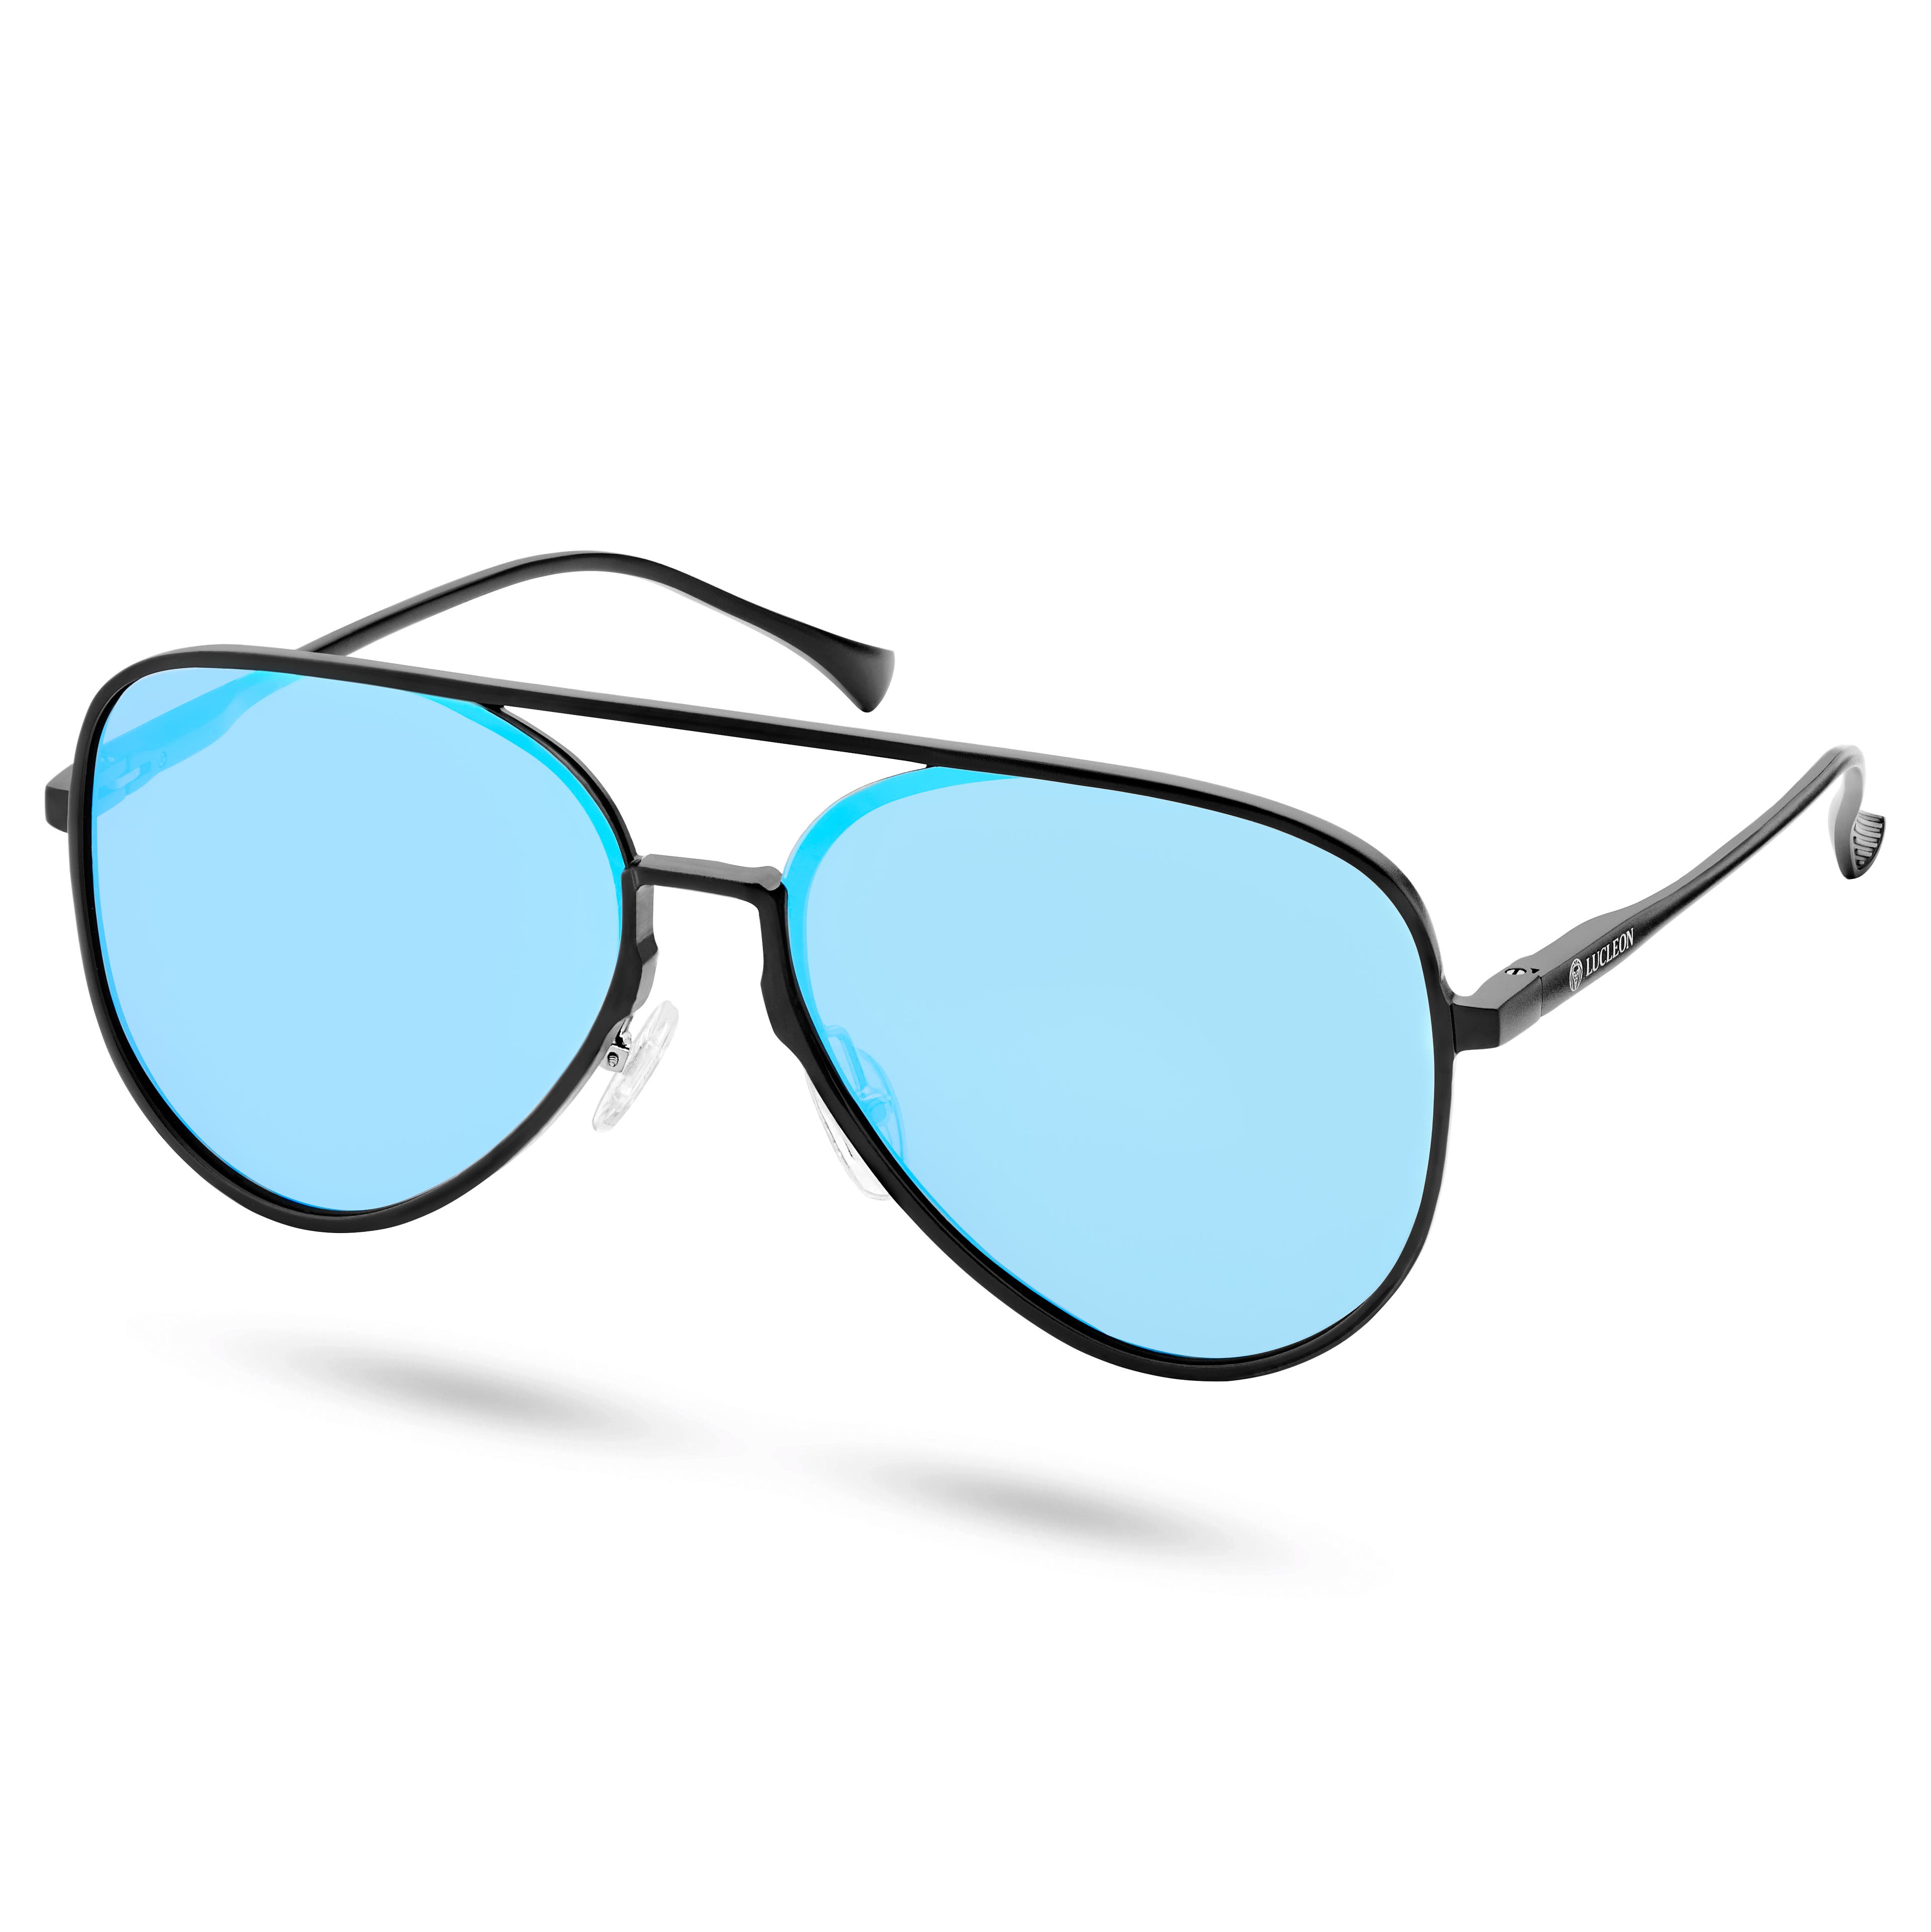 Sort med Blå Speilglass Polariserte Pilot Solbriller